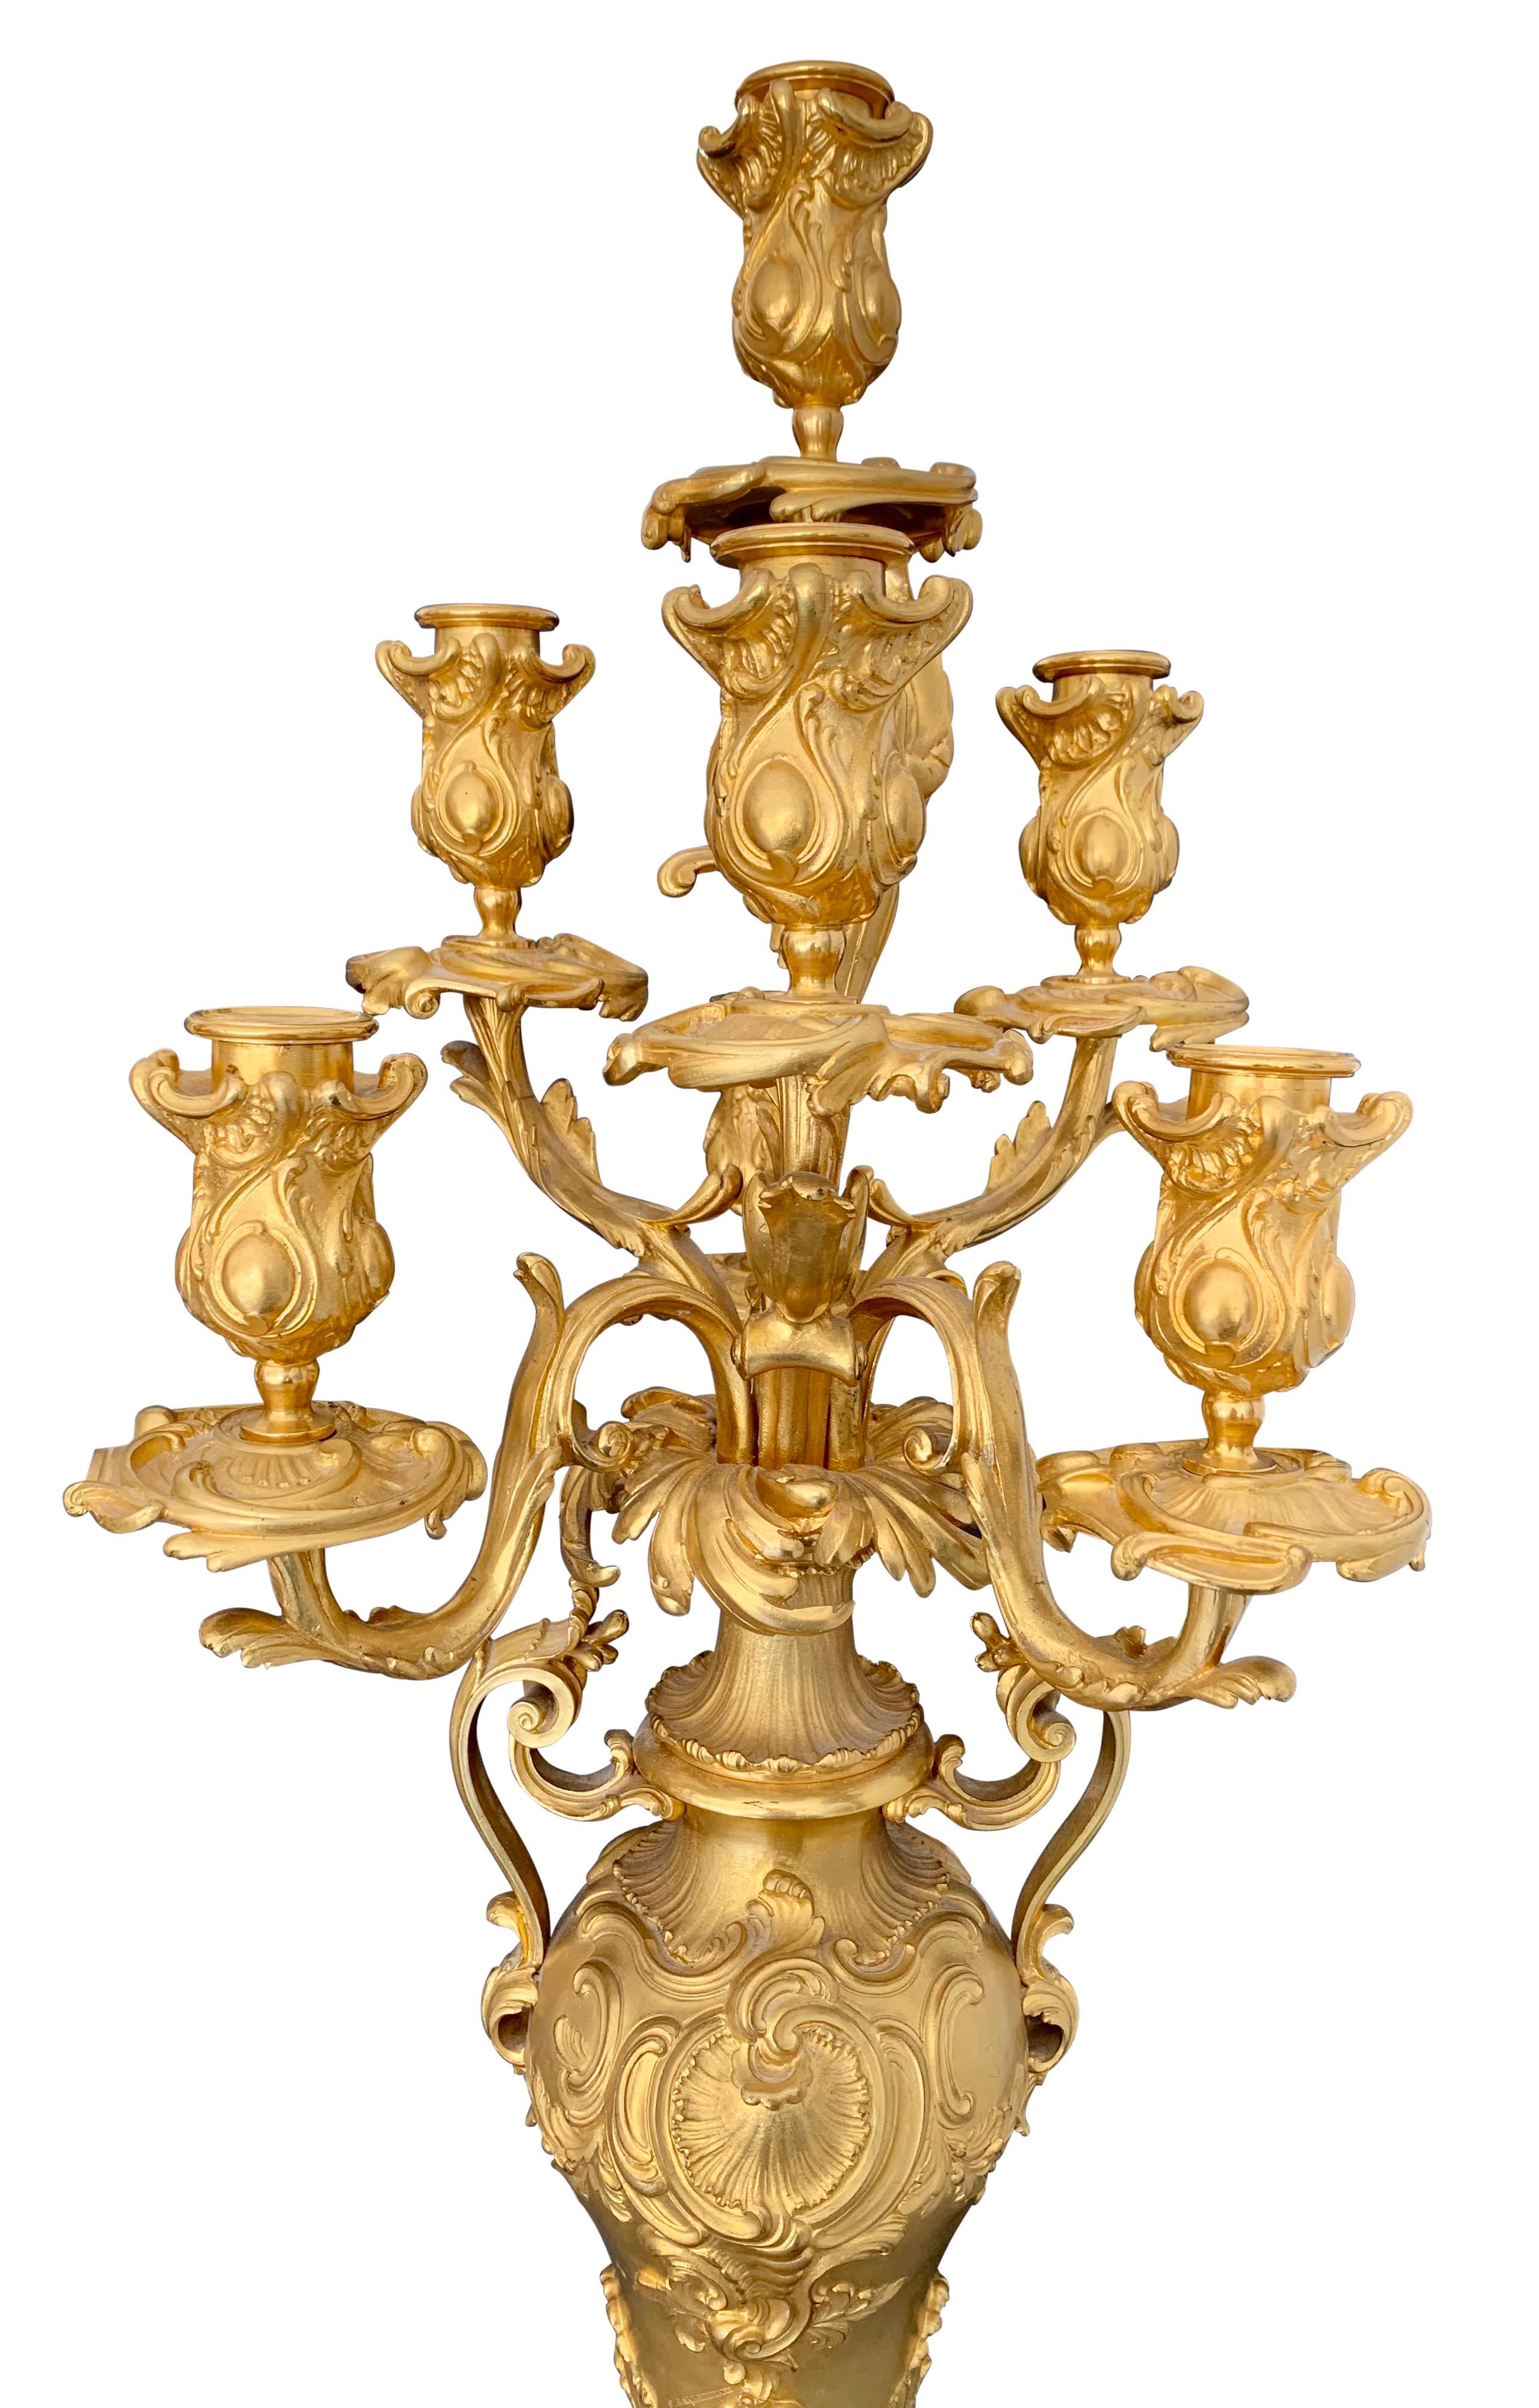 Superbe paire de candélabres à sept bras de style Louis XV en bronze doré et marbre Rouge Griotte par Ferdinand Barbedienne. Chacun d'eux est surmonté d'une base carrée en marbre Rouge Griotte et de pieds en bronze doré à volutes avec des montures